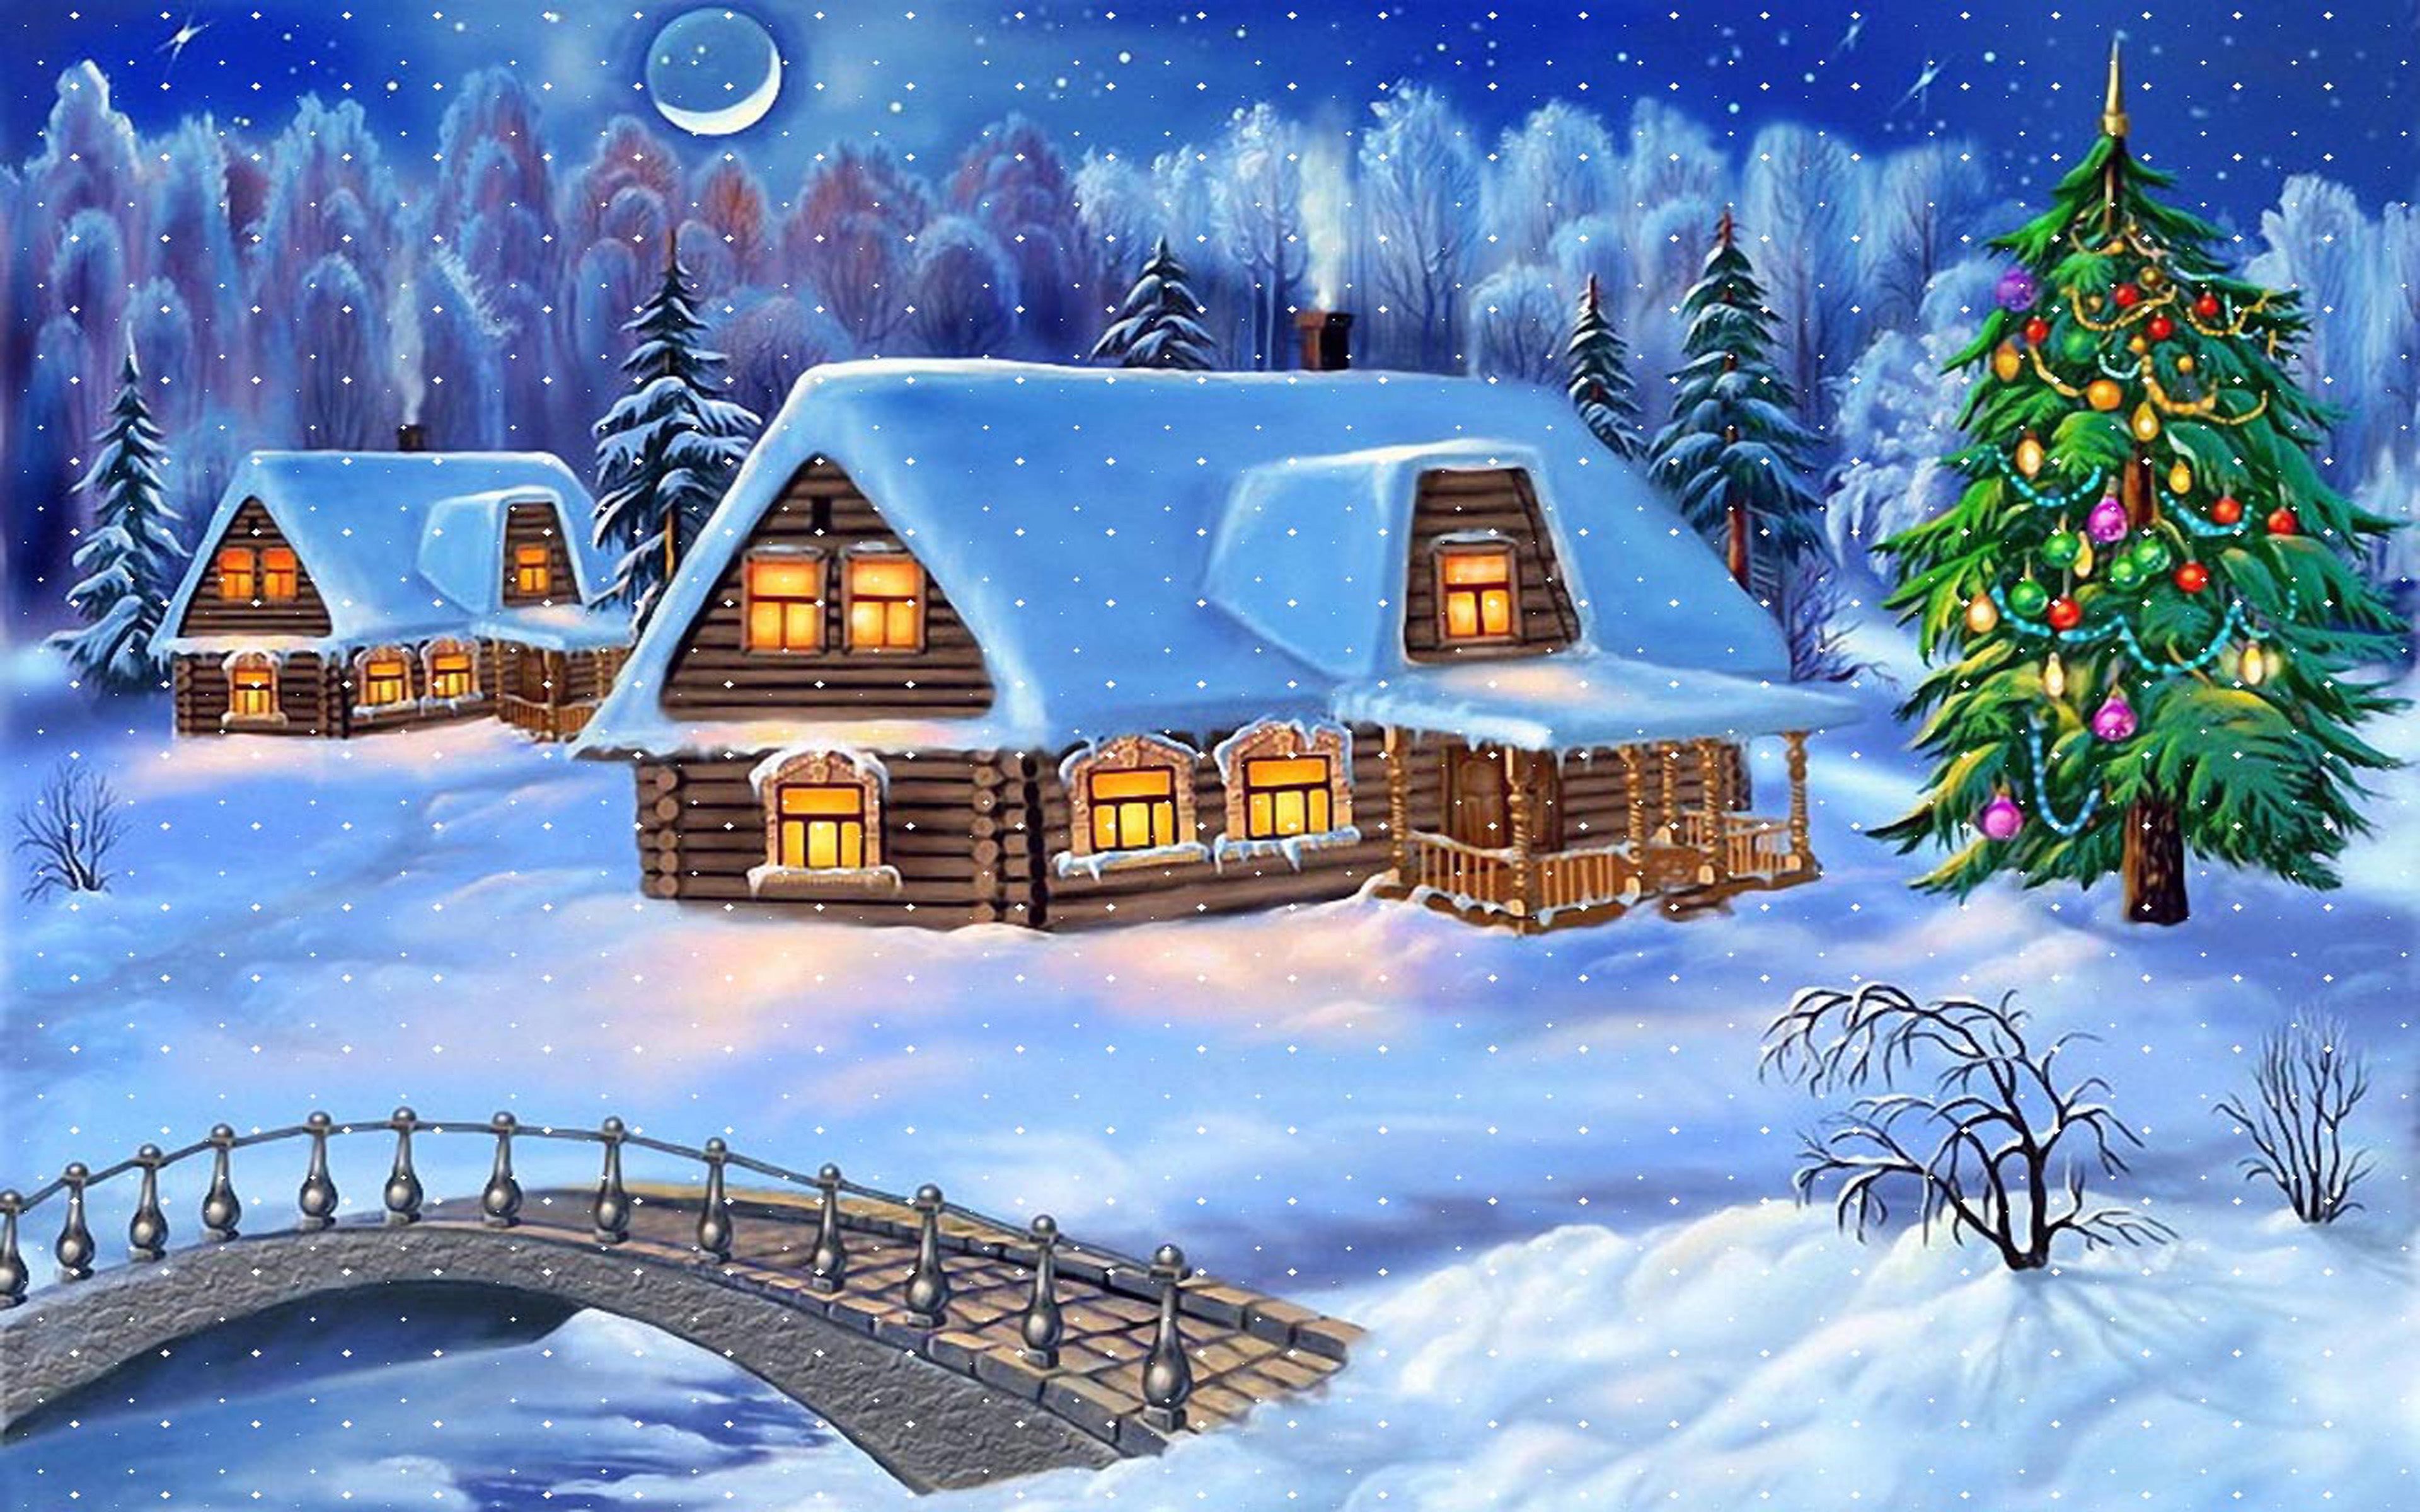 Sfondi Natalizi Per Computer.Scarica Sfondi Natale 4k Villaggio Inverno Capodanno Monitor Con Risoluzione 3840x2400 Immagini Sul Desktop